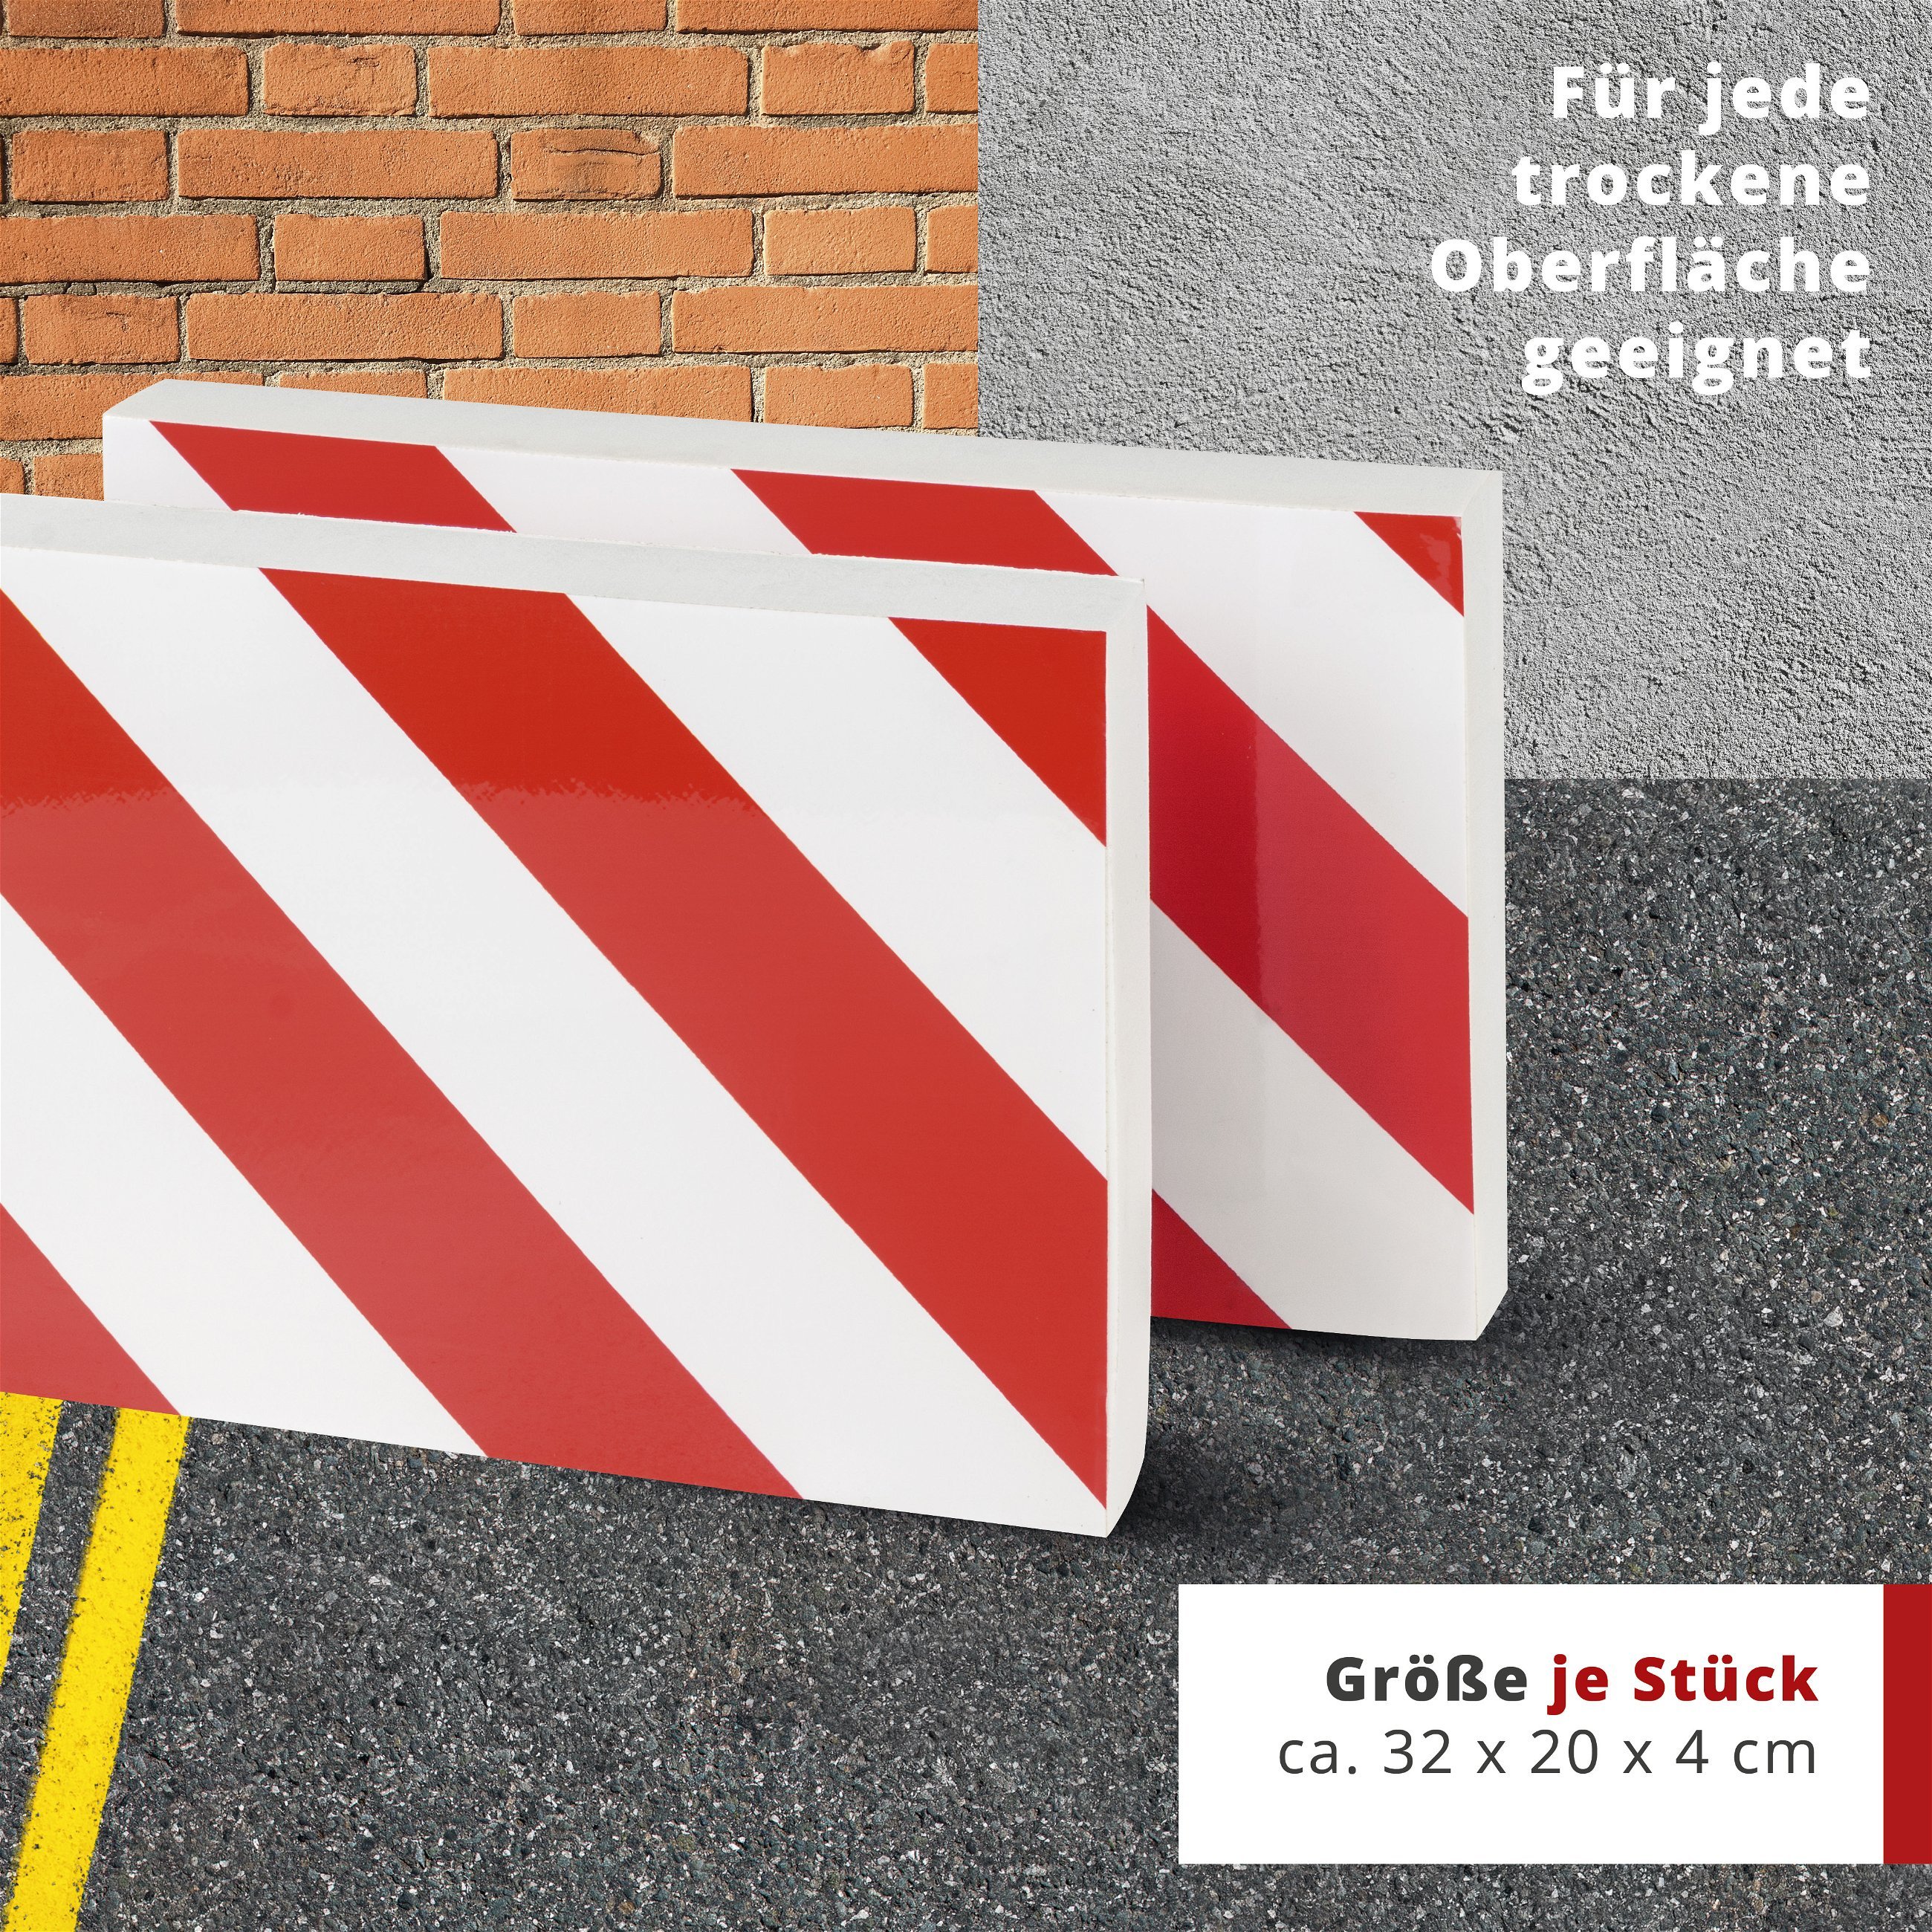 Garagen-Wandschutz, 2 Stück Auto-Türkanten-Schutz selbstklebend 32x20x4 cm rot/weiß